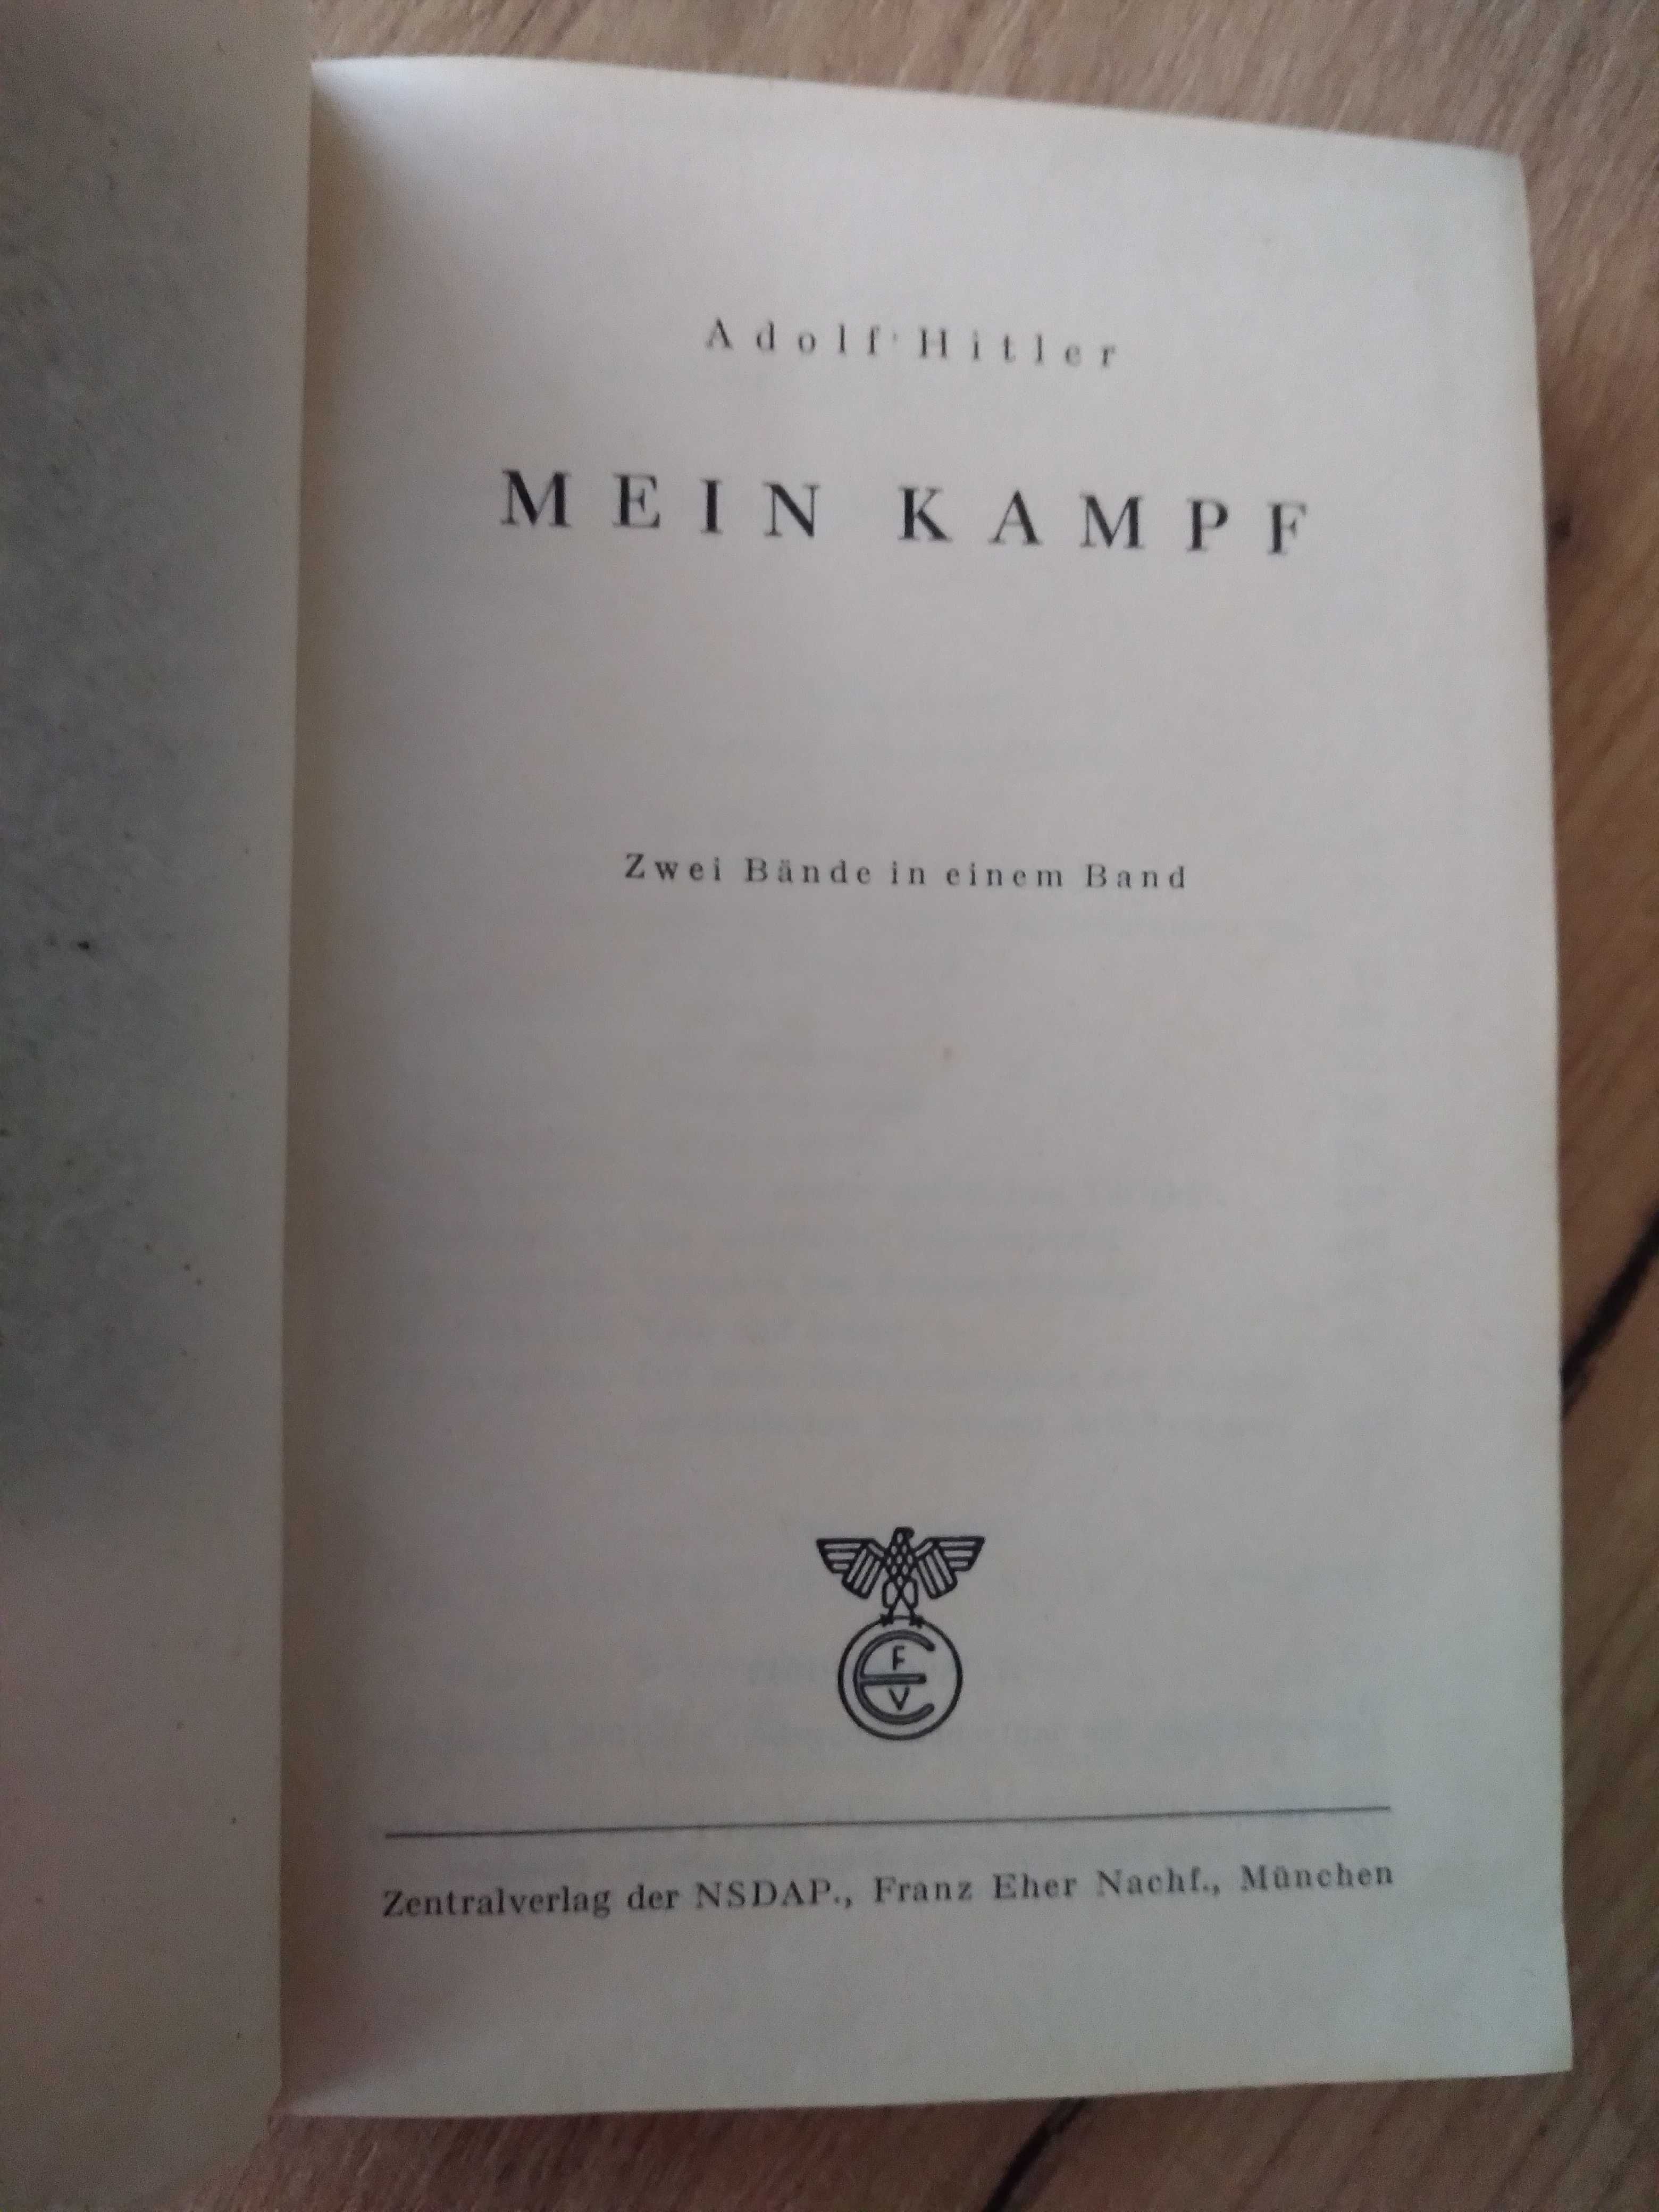 Mein kampf, wydanie niemieckie 1942 rok